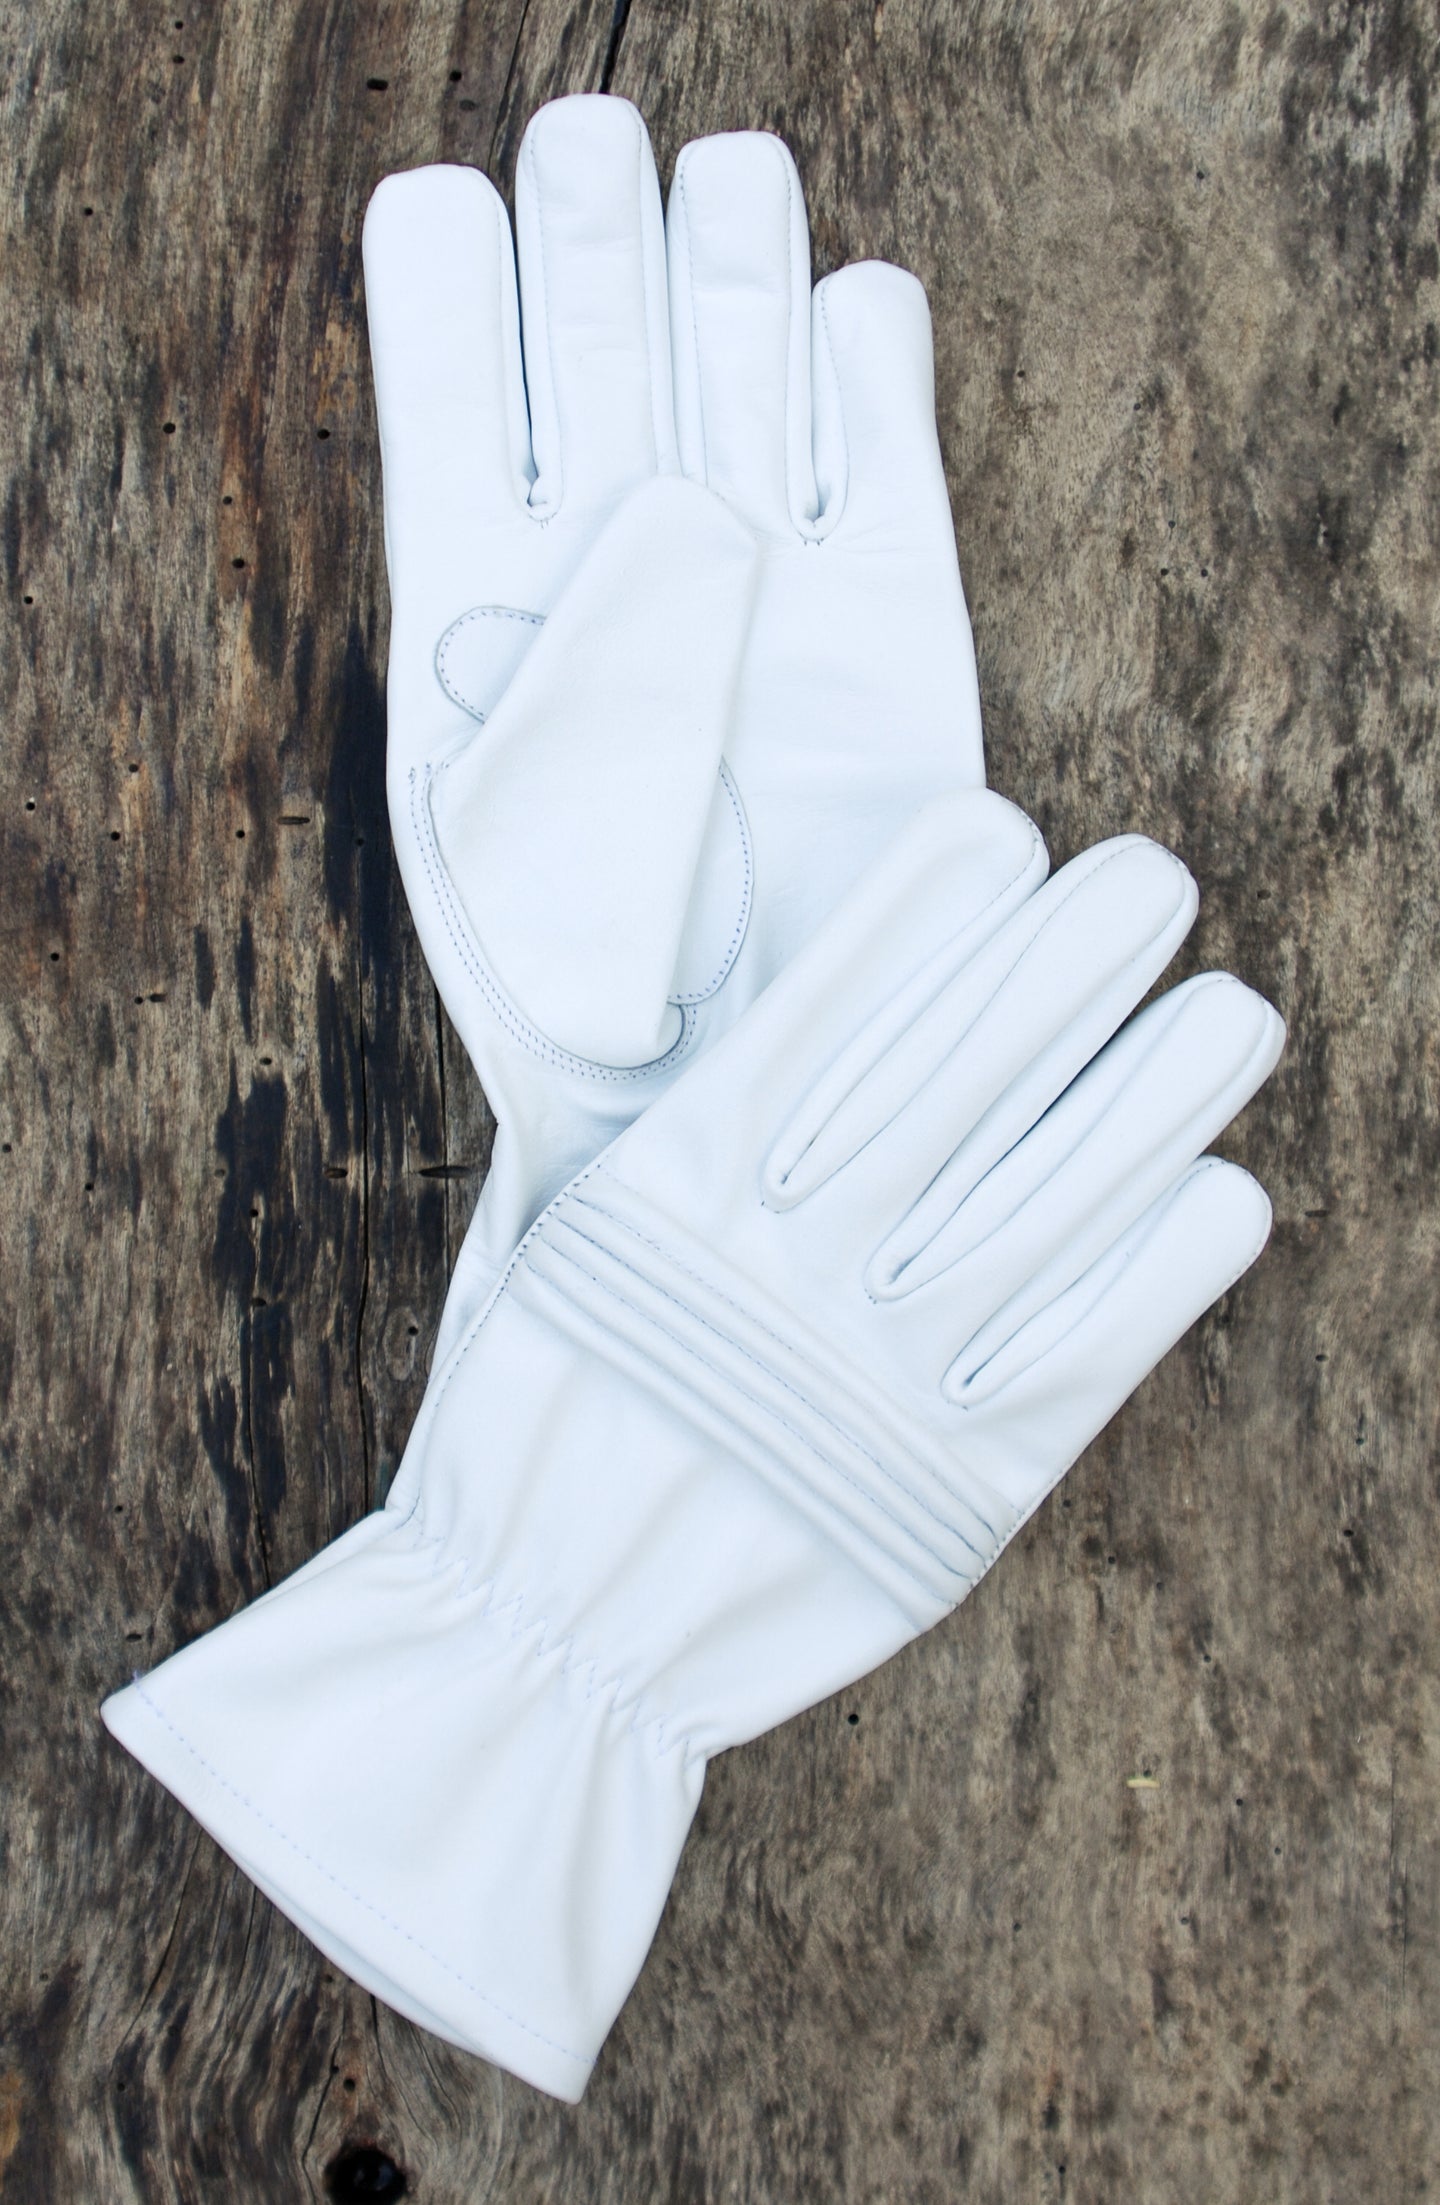 Power Ranger gloves for Cosplay/Short gauntlet